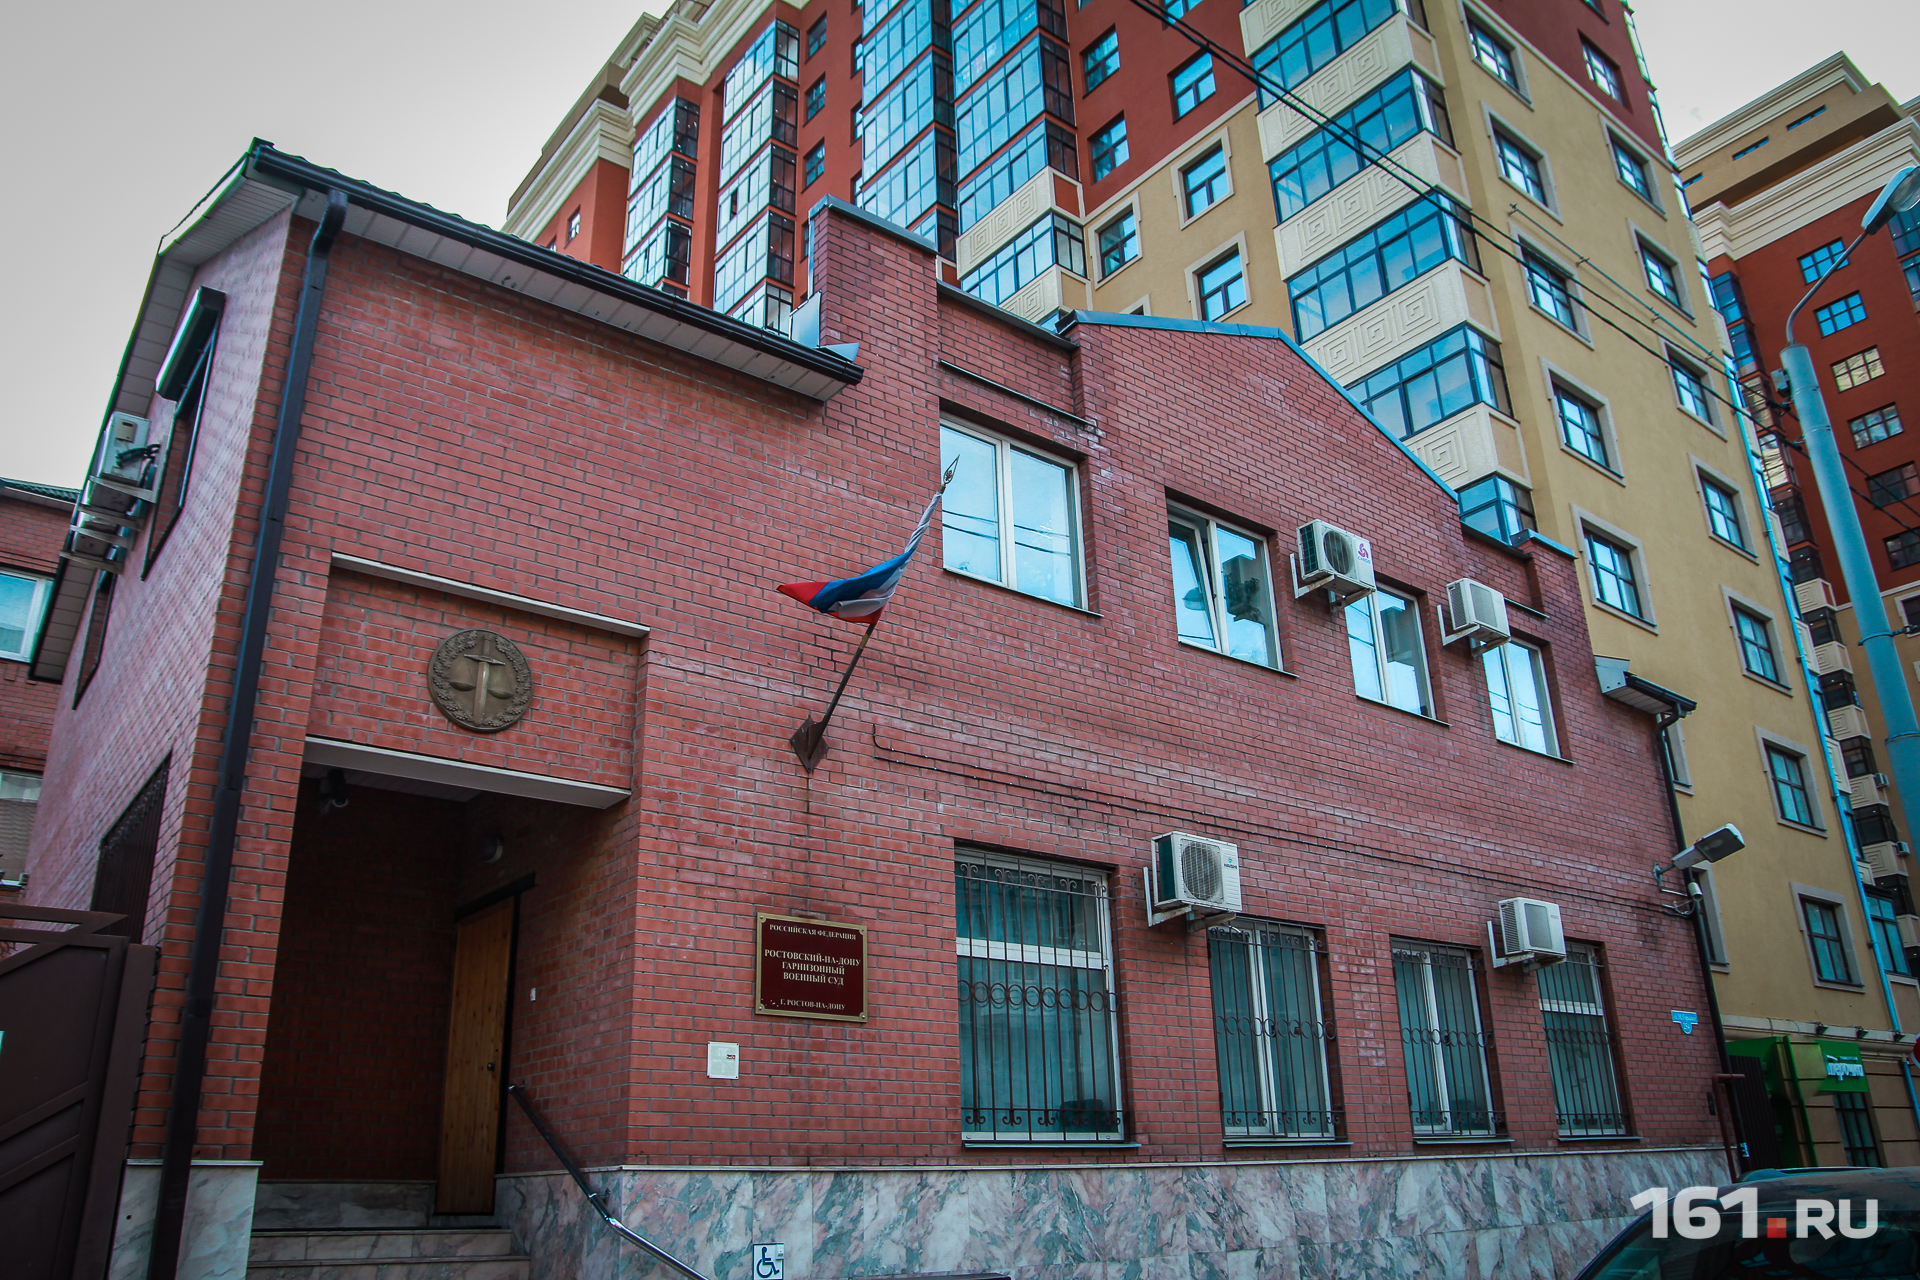 Военный суд ростовского на дону